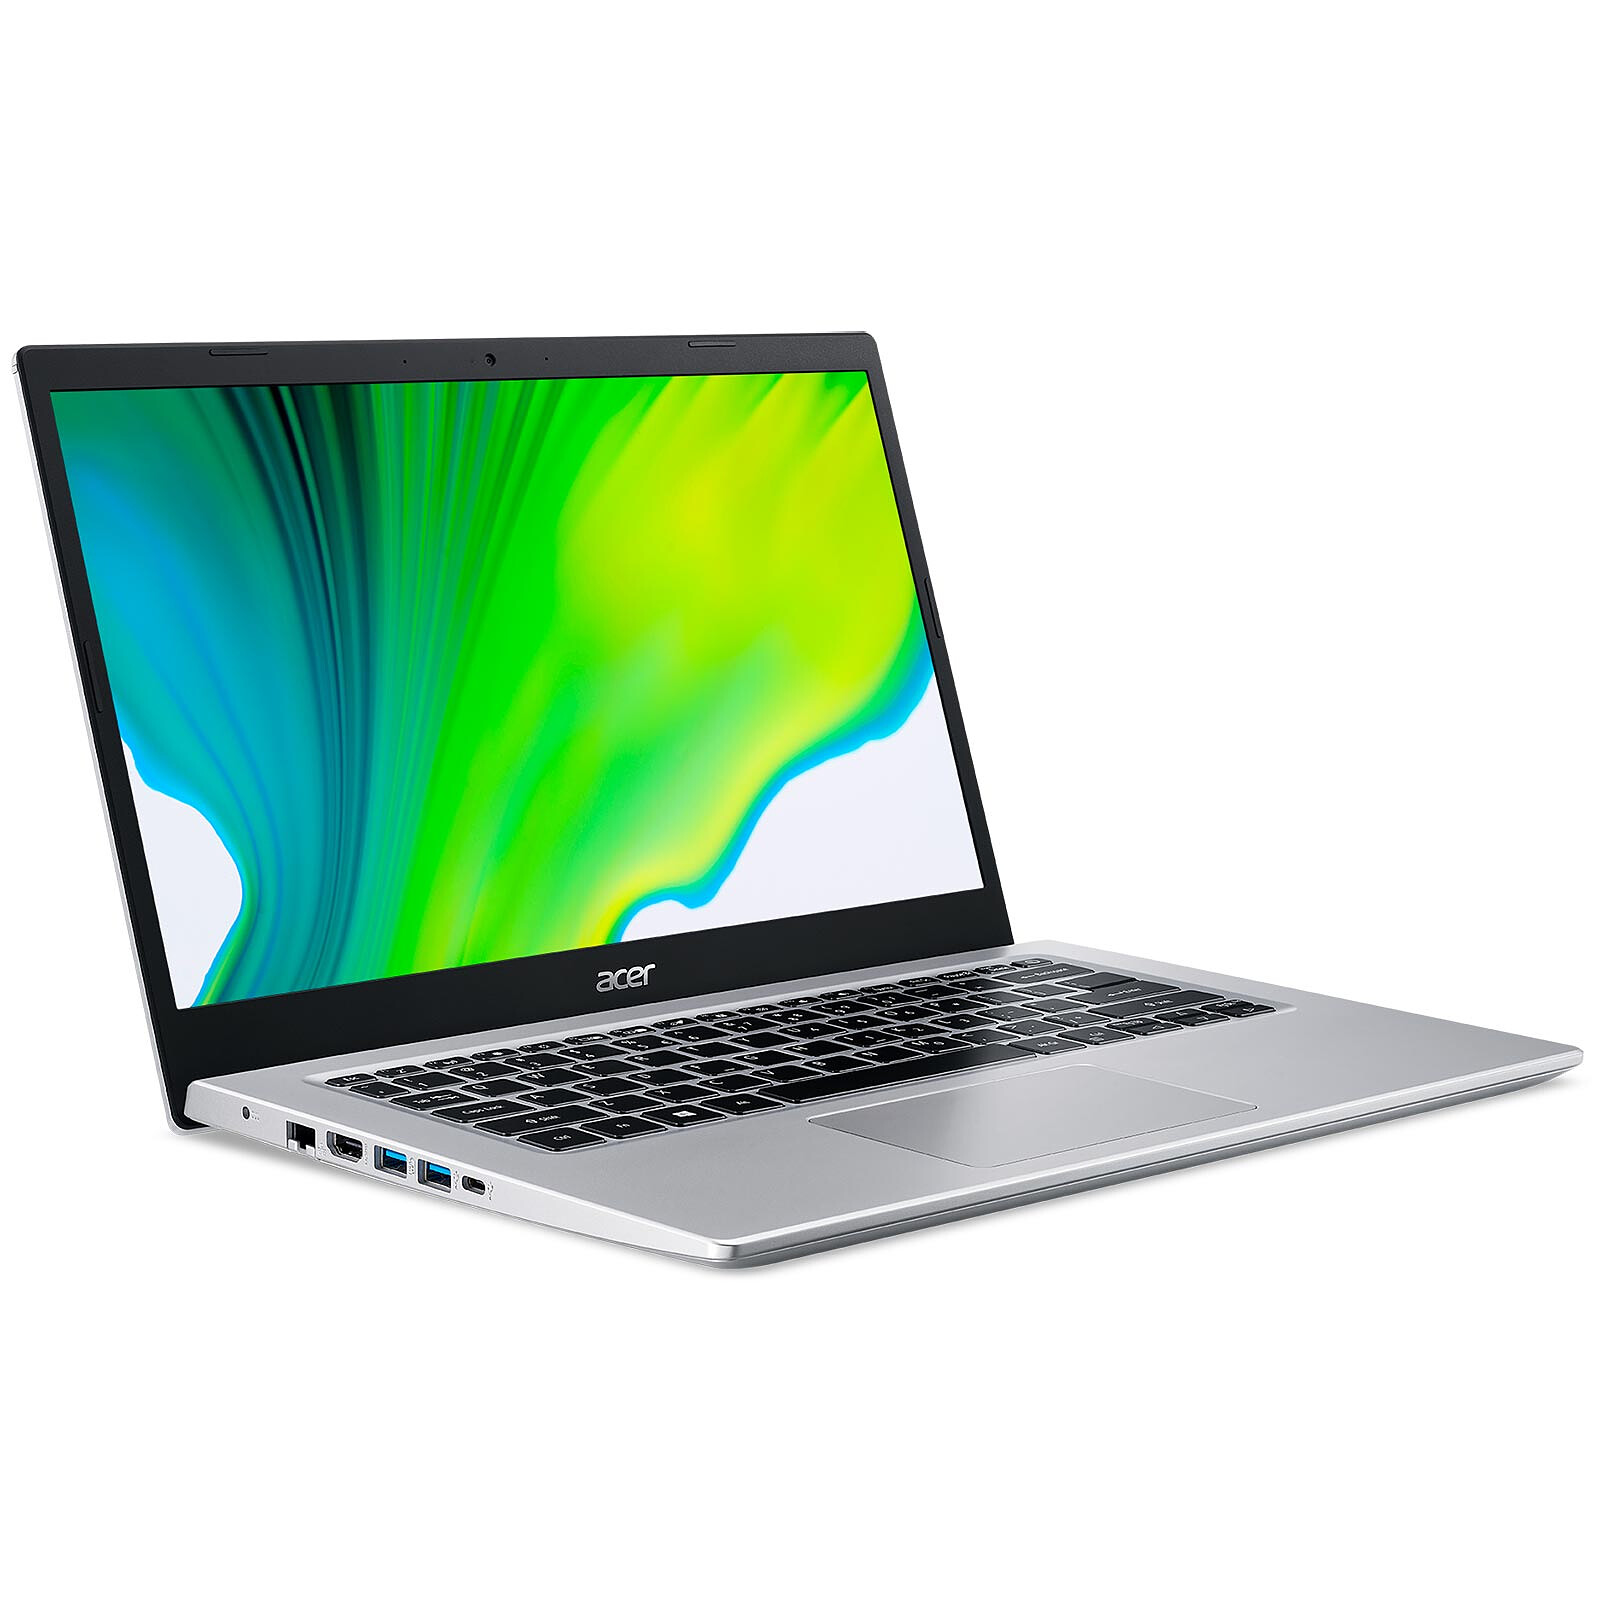 Acer Aspire 5 A514-54-349E - PC portable - Garantie 3 ans LDLC